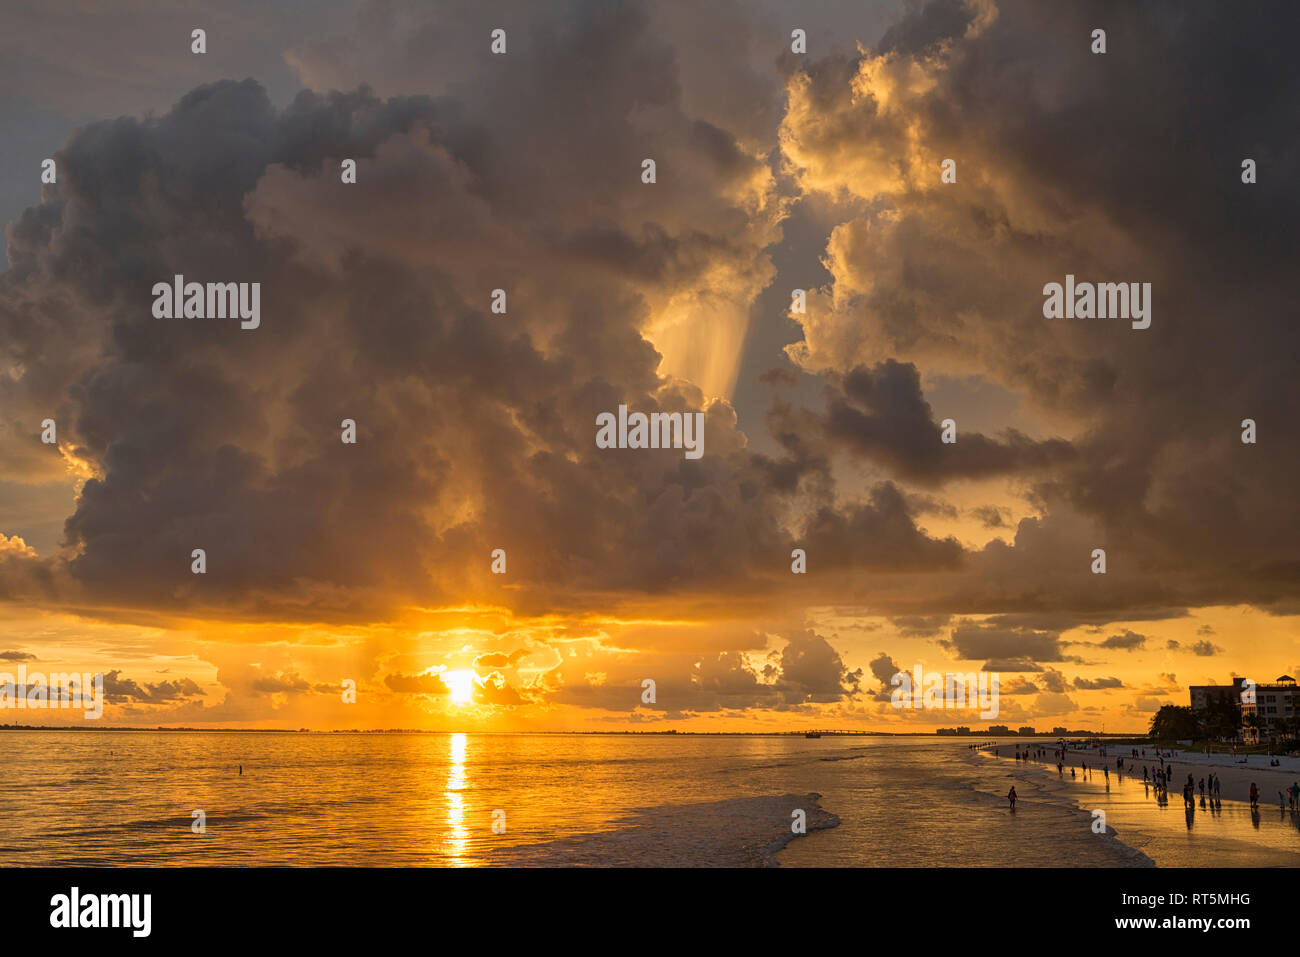 États-unis d'Amérique, Floride, Fort Myers, silhouettes de Fort Myers Beach et les touristes avec un énorme nuage de pluie au-dessus pendant le coucher du soleil Banque D'Images